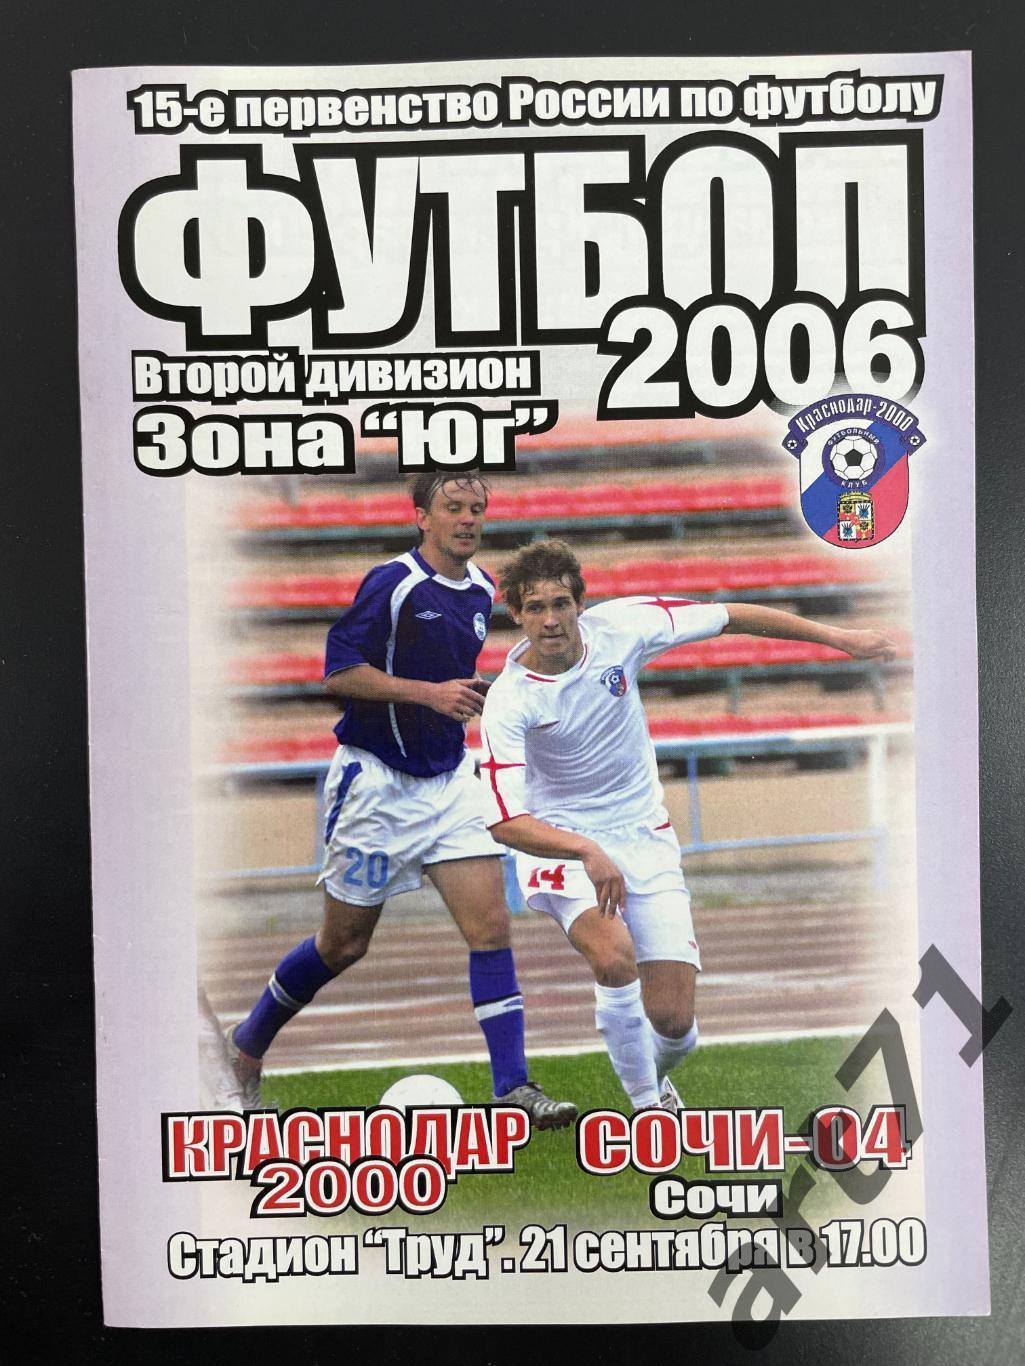 Краснодар-2000 Краснодар - Сочи-04 Сочи 2006